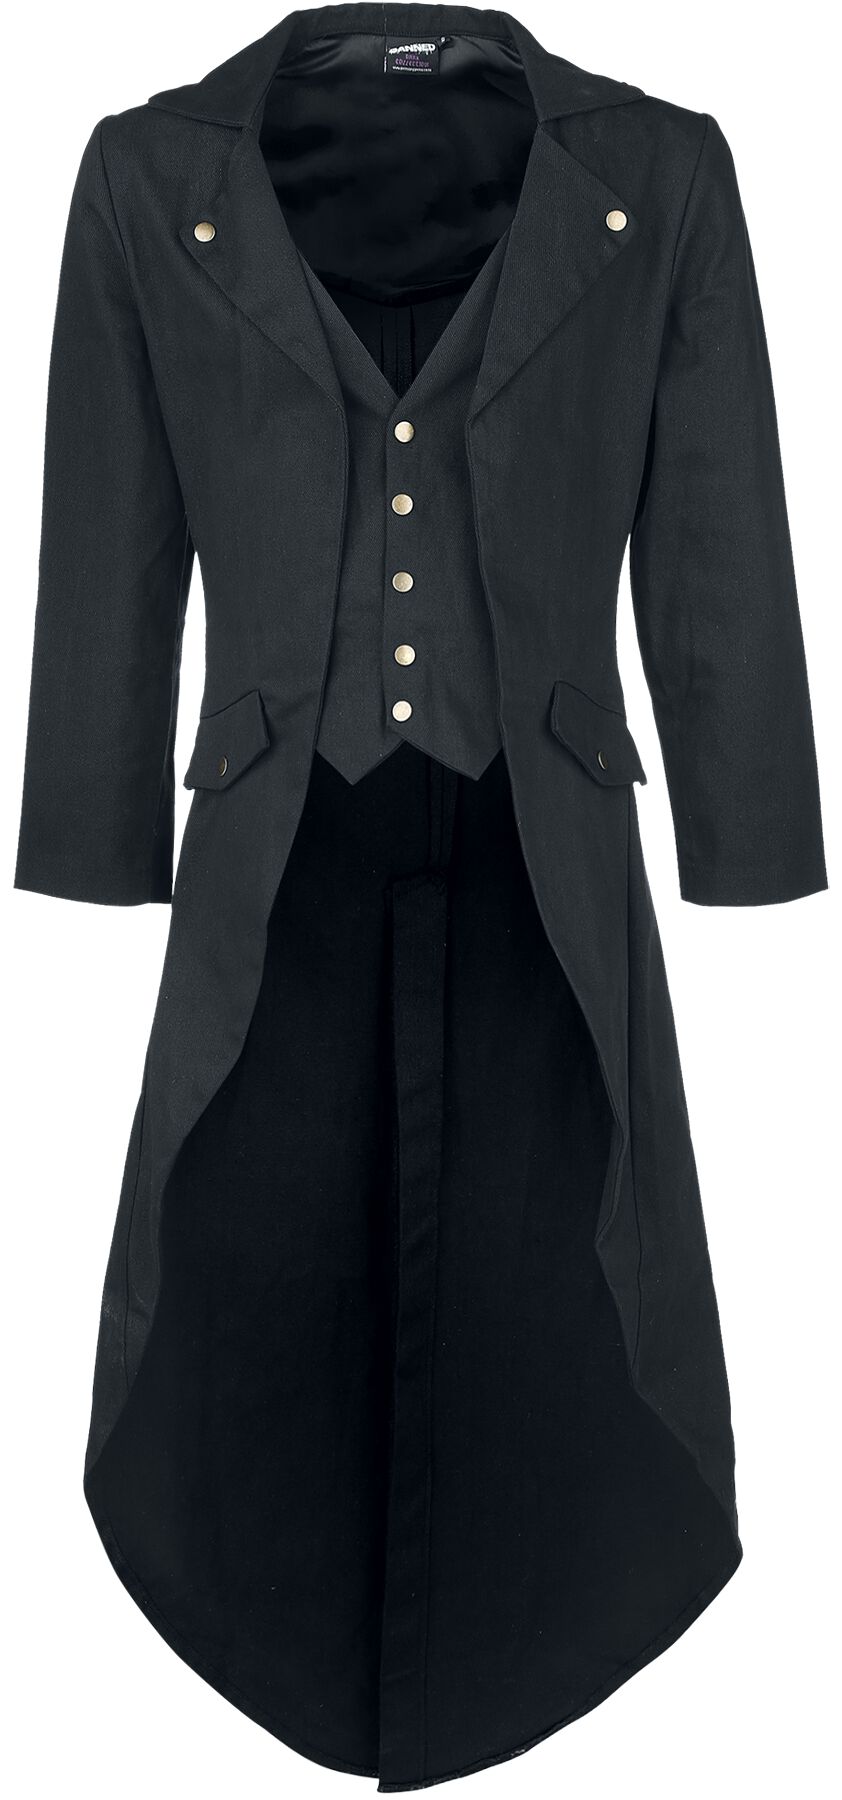 Banned Alternative Dovetail Coat Militärmantel schwarz in XL